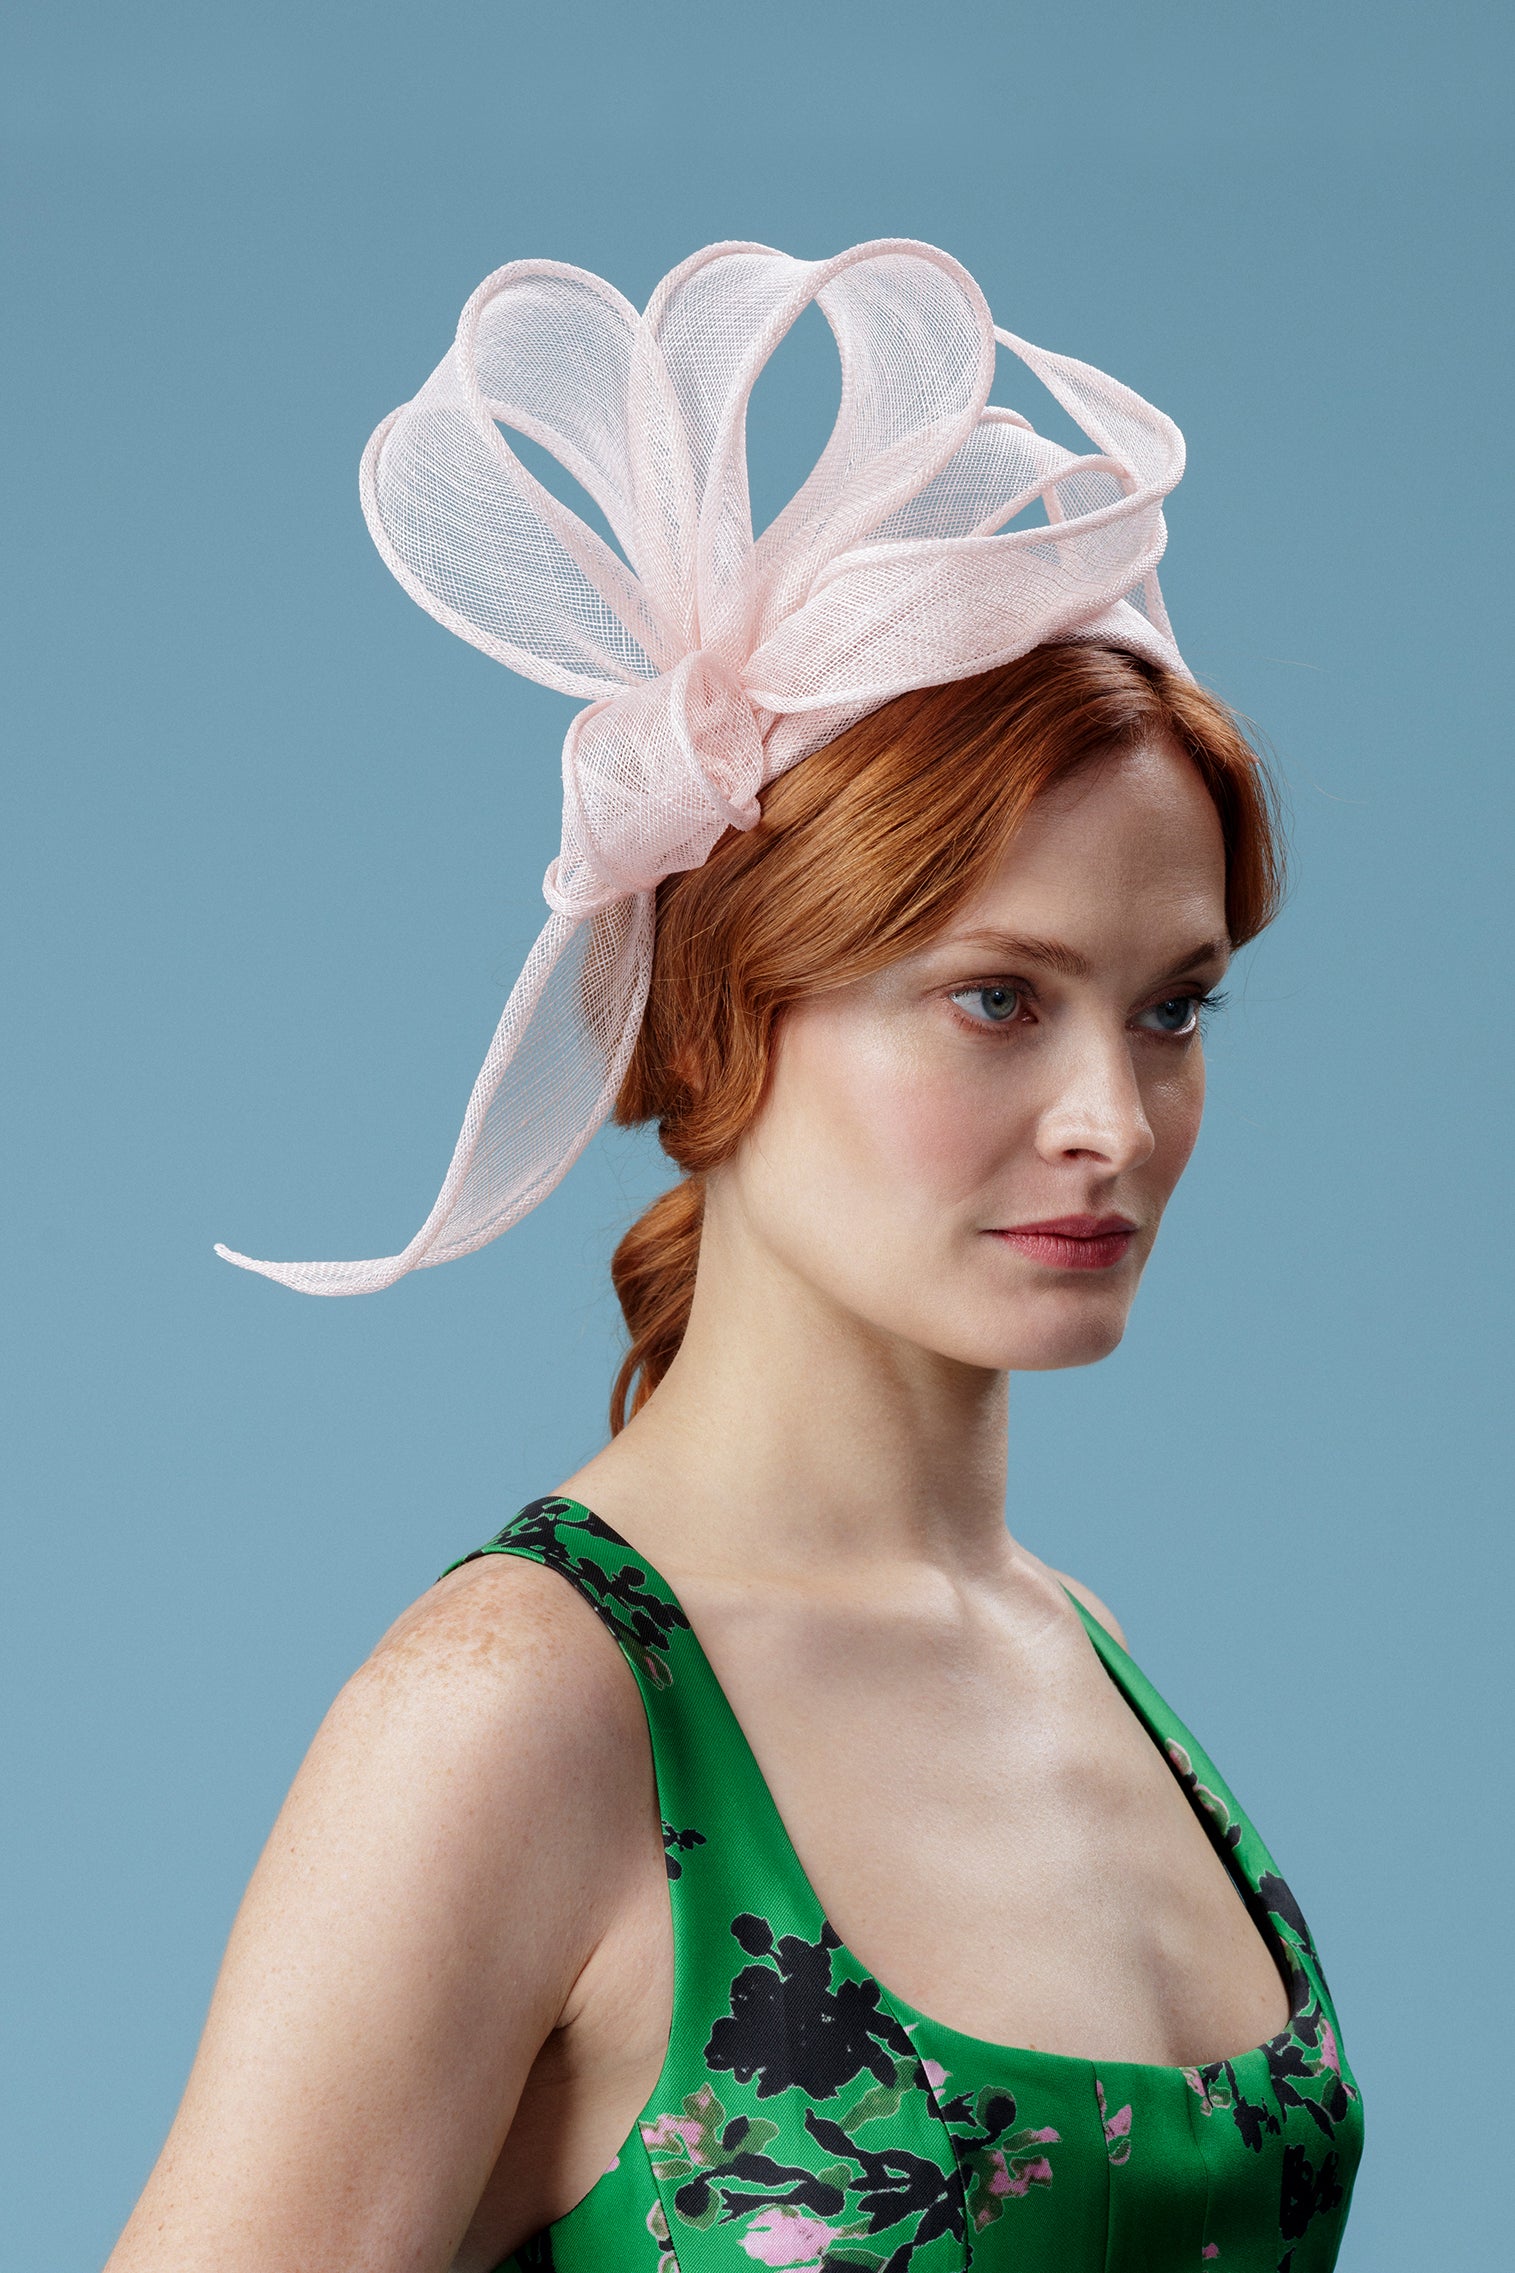 Rosemary Pink Headband - Kentucky Derby Hats for Women - Lock & Co. Hatters London UK